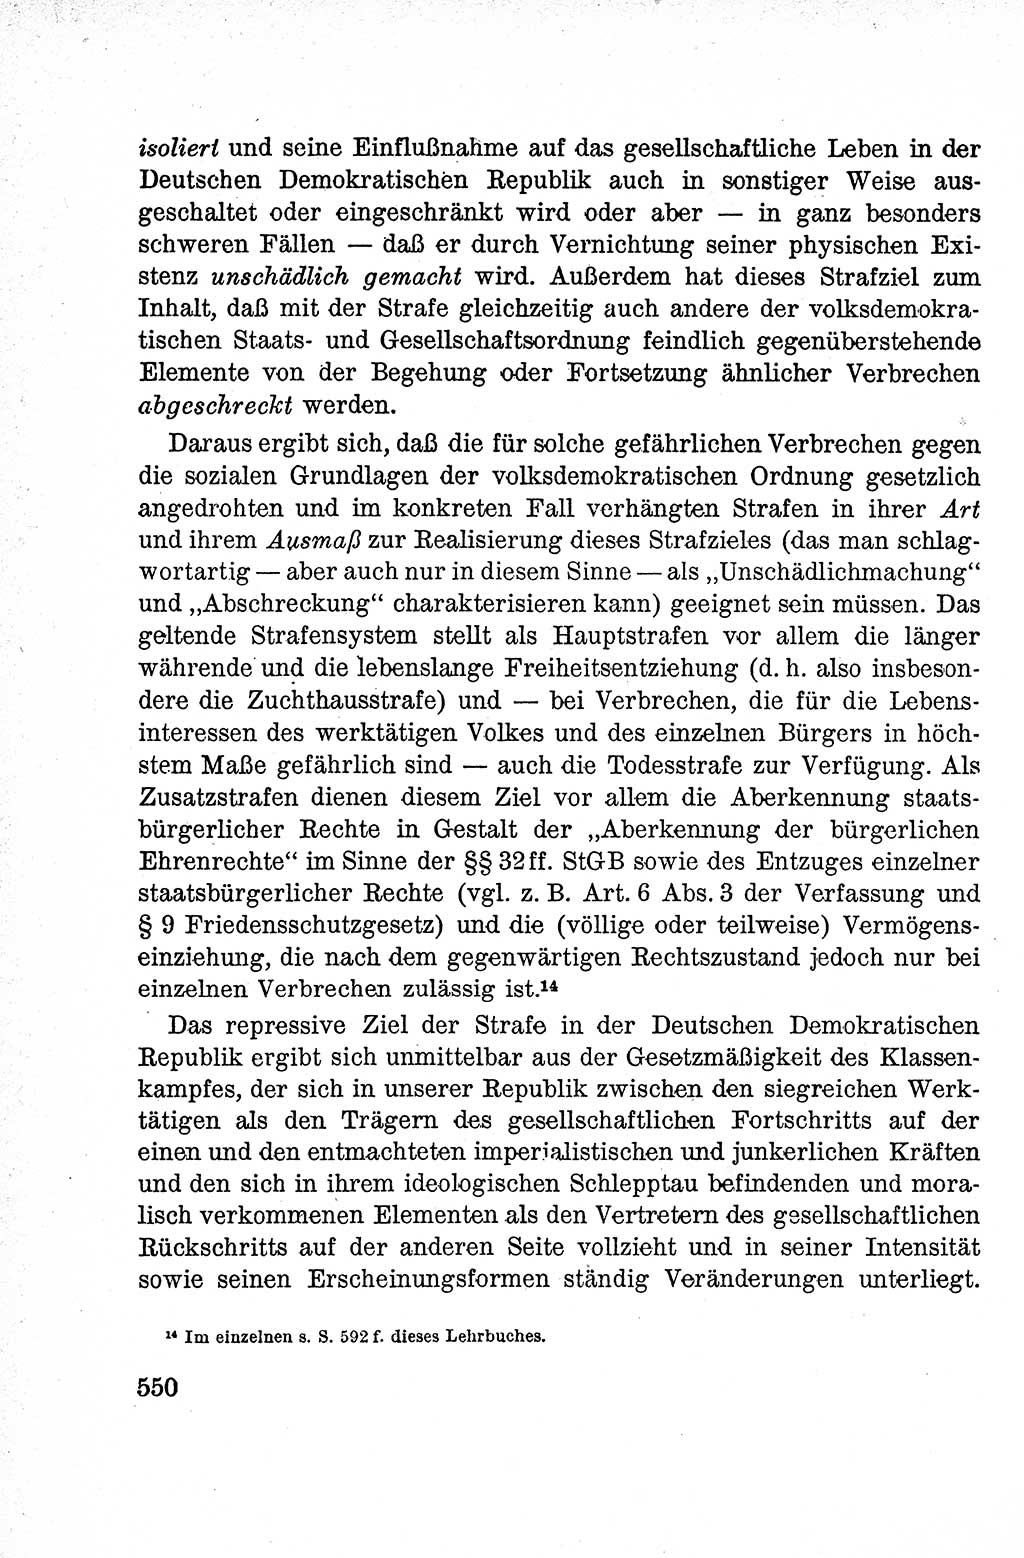 Lehrbuch des Strafrechts der Deutschen Demokratischen Republik (DDR), Allgemeiner Teil 1959, Seite 550 (Lb. Strafr. DDR AT 1959, S. 550)